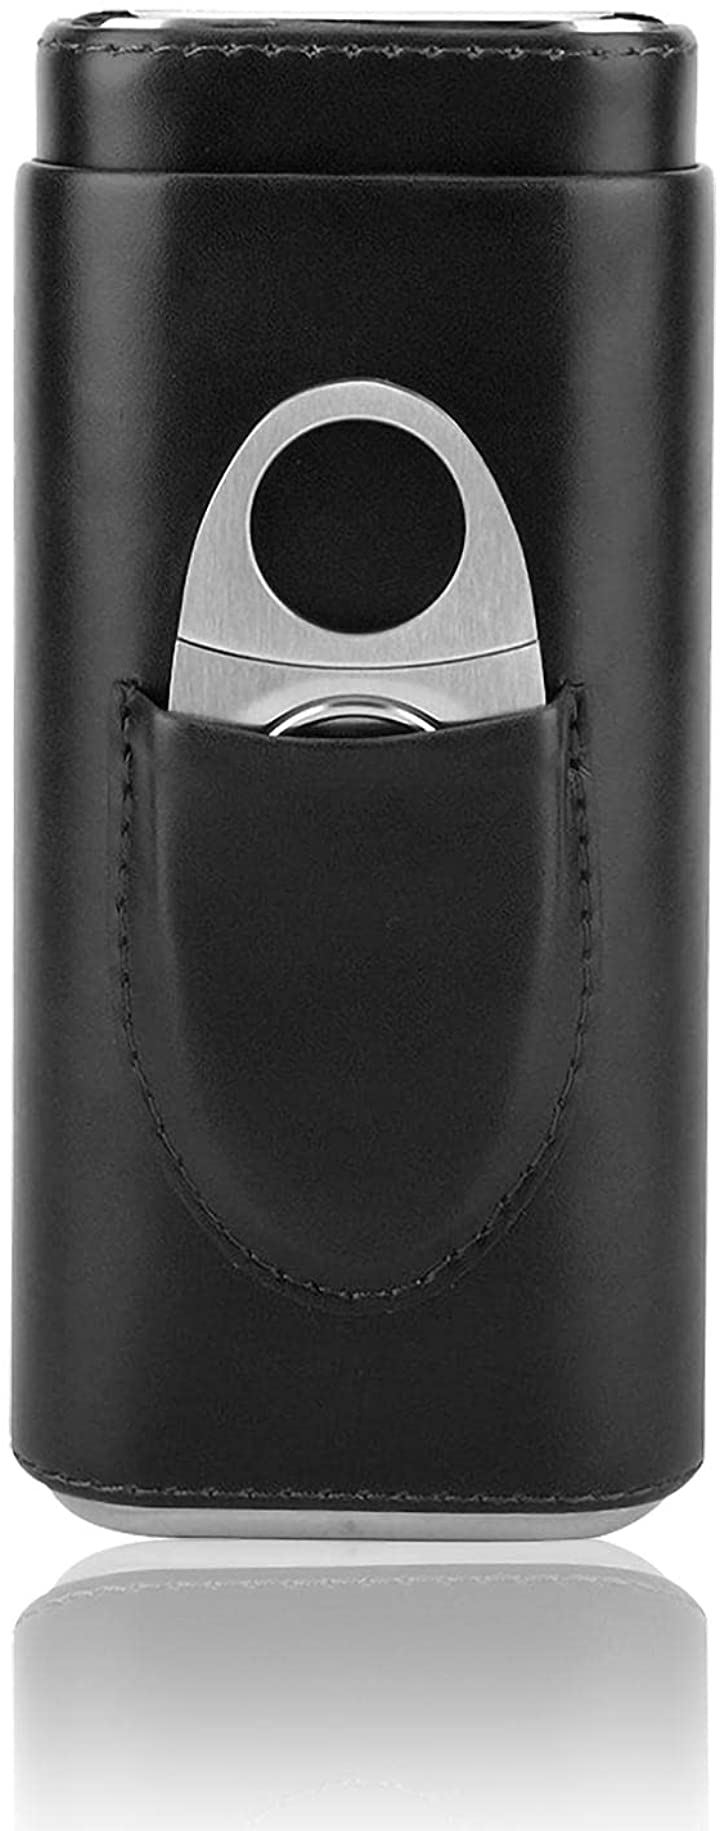 シガーケース シガーカッター付き レザー 葉巻 軽量 ステンレス セット 携帯 保管 喫煙具( ブラック)